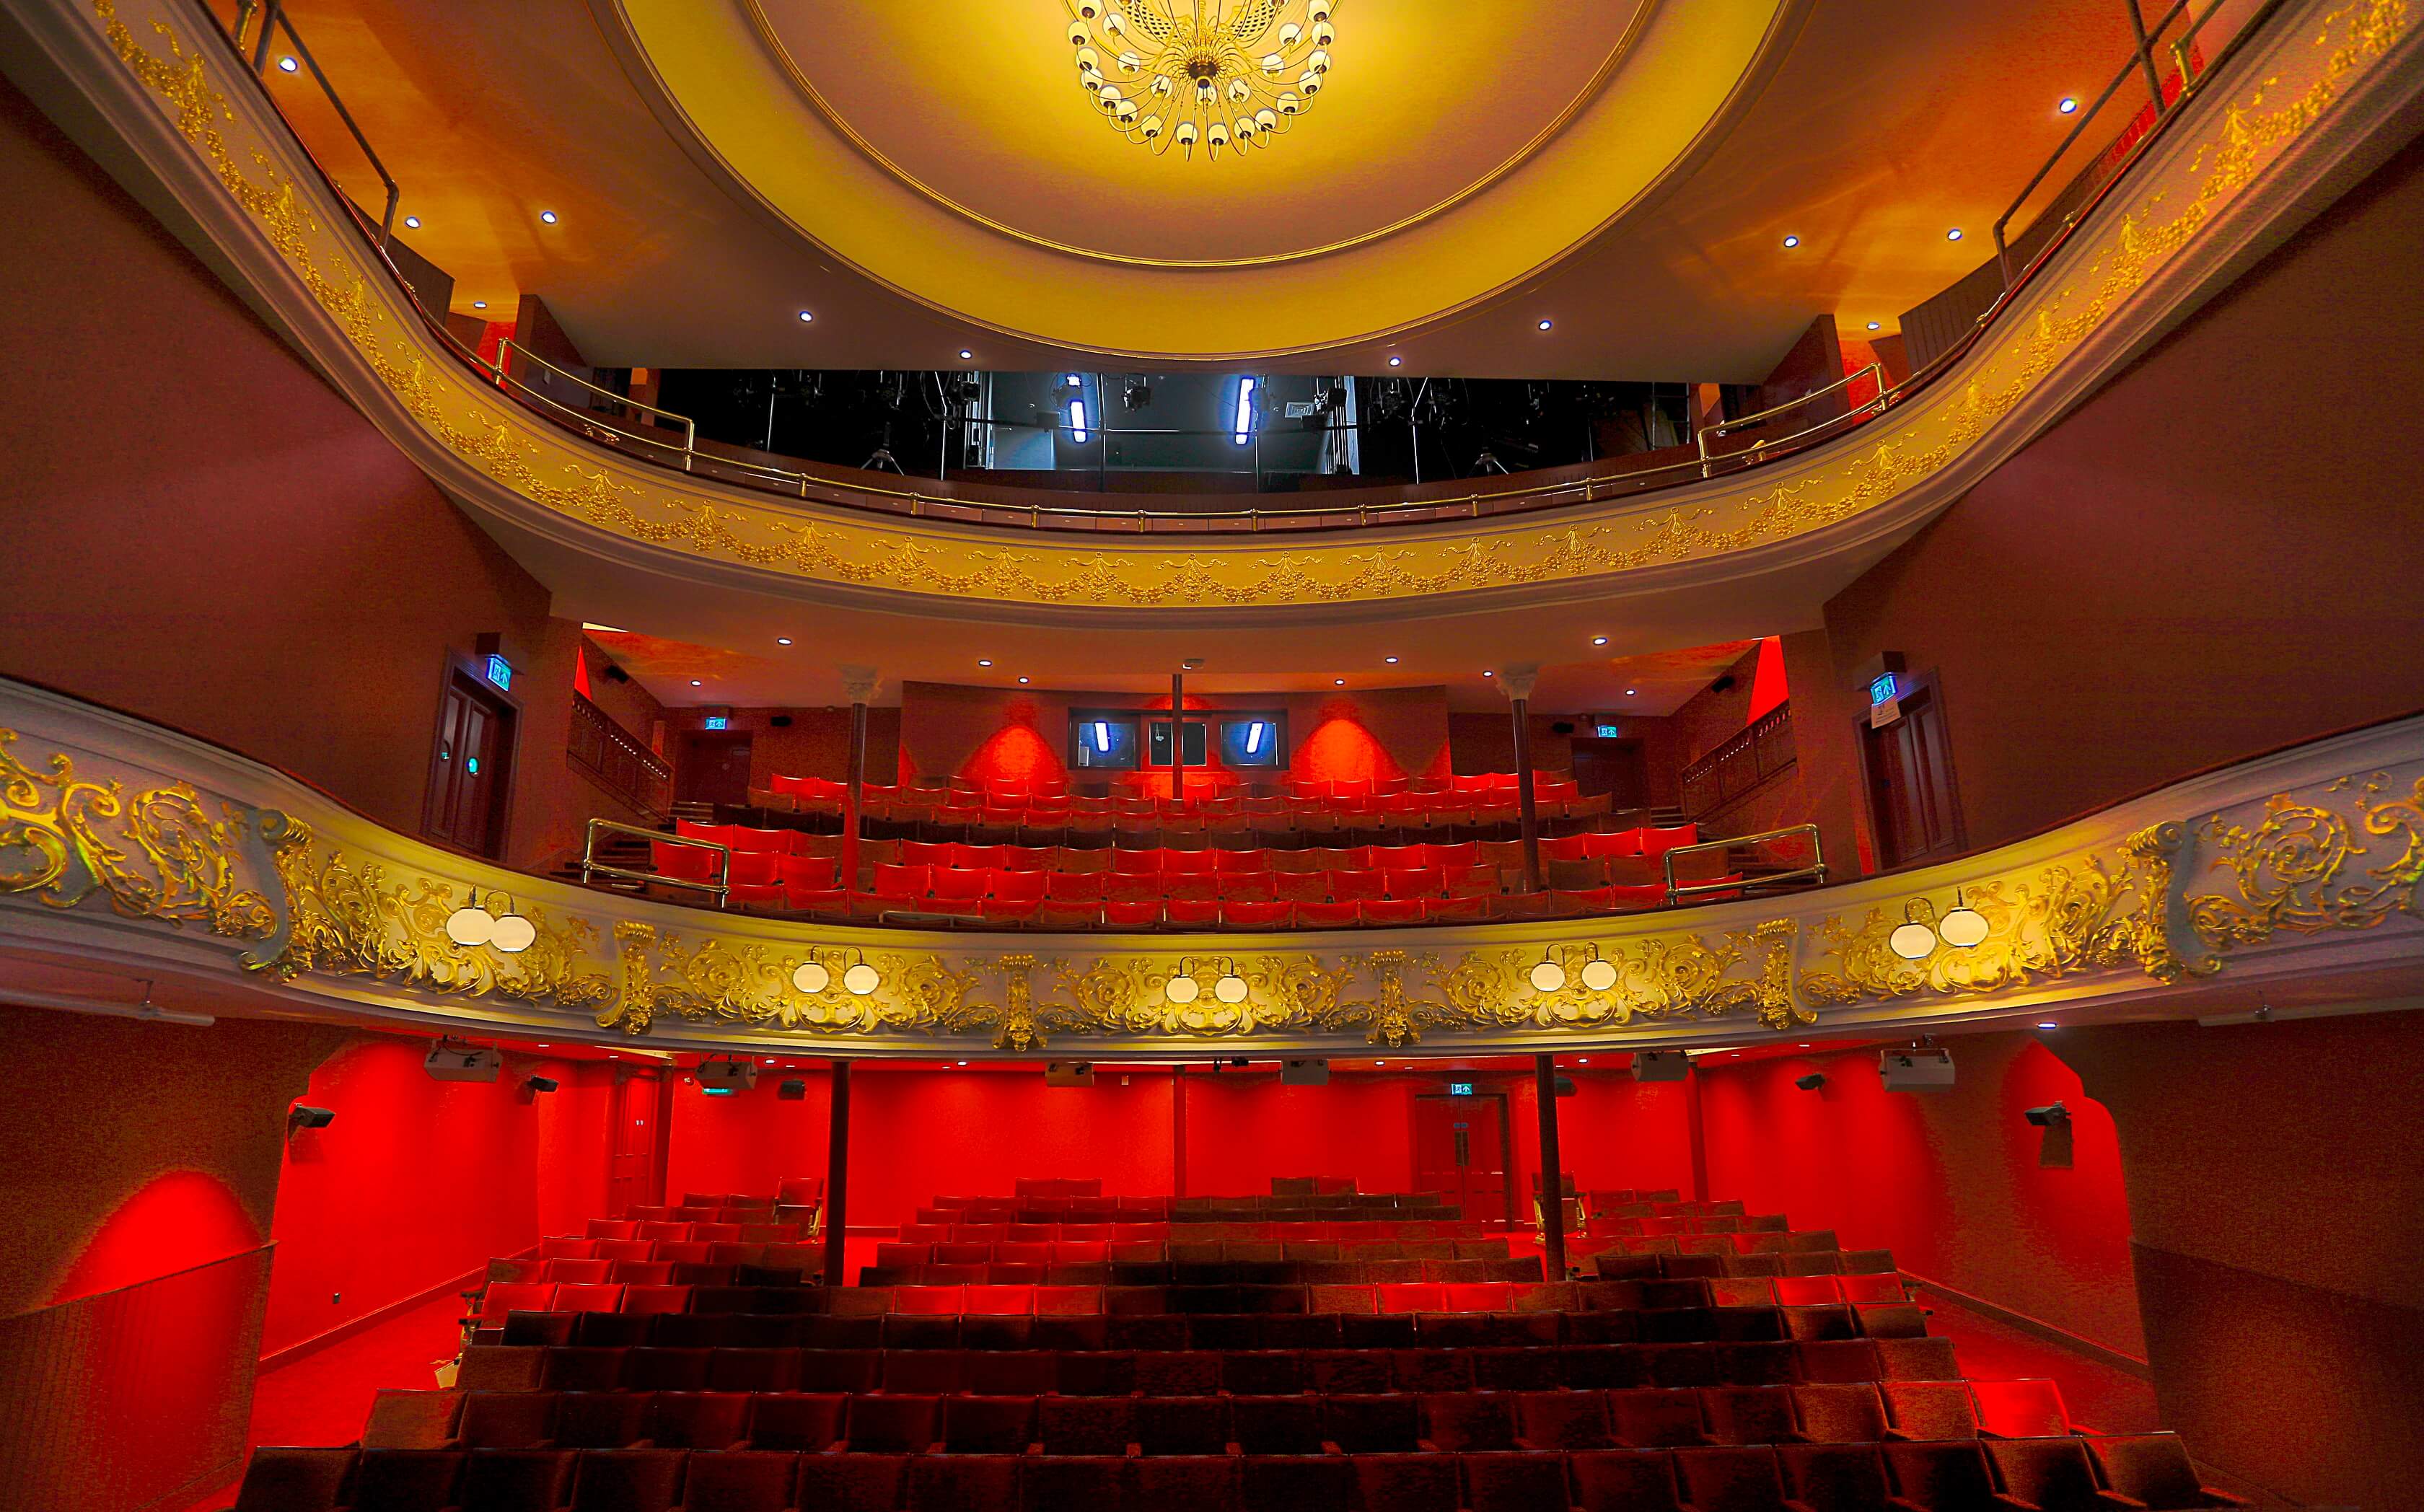 Perth Theatre Main Auditorium Image